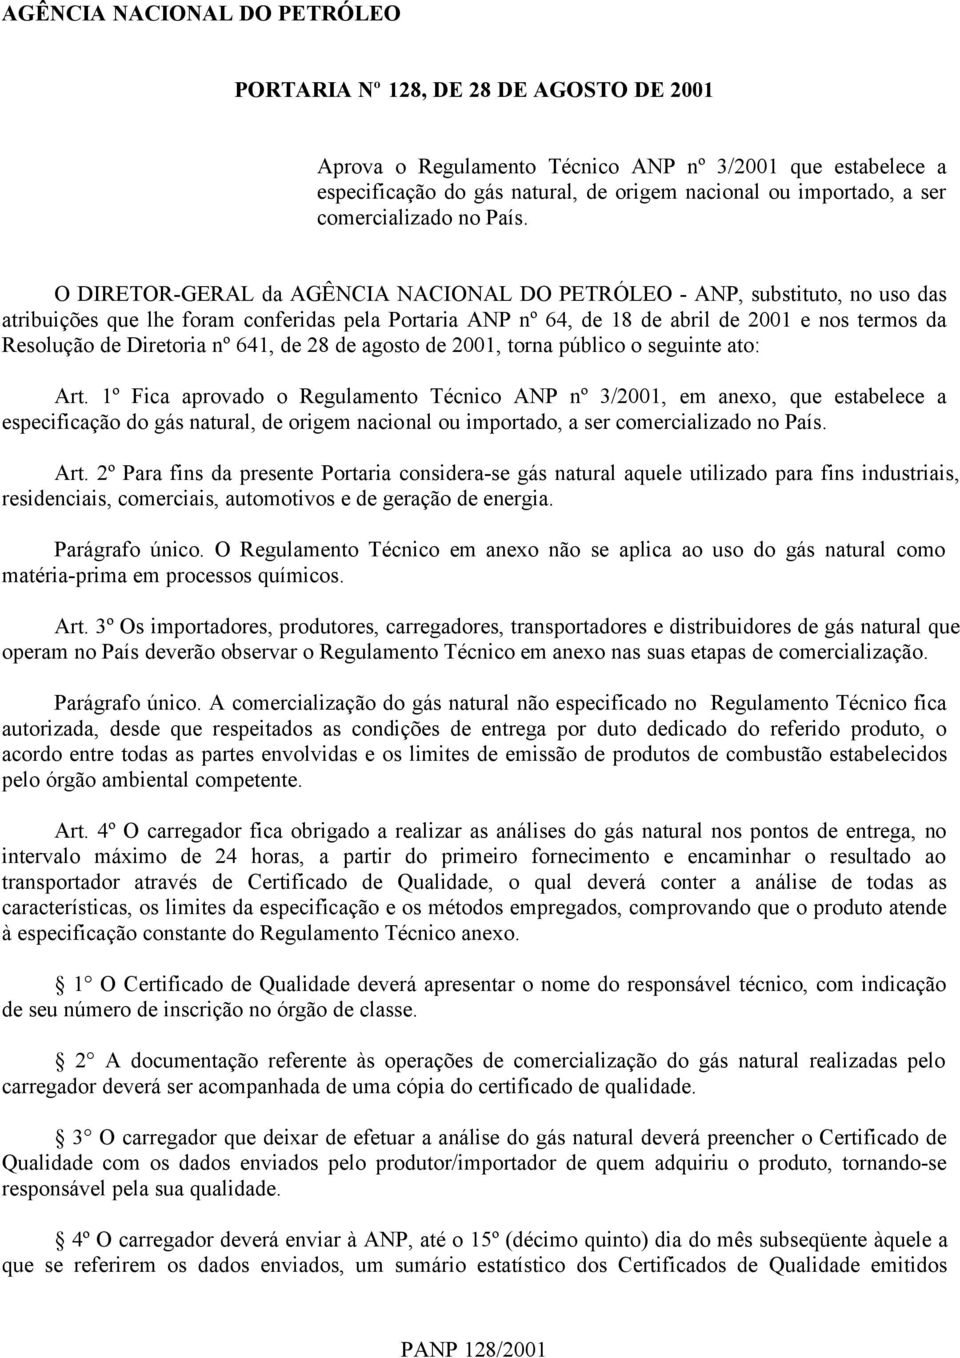 O DIRETOR-GERAL da AGÊNCIA NACIONAL DO PETRÓLEO - ANP, substituto, no uso das atribuições que lhe foram conferidas pela Portaria ANP nº 64, de 18 de abril de 2001 e nos termos da Resolução de